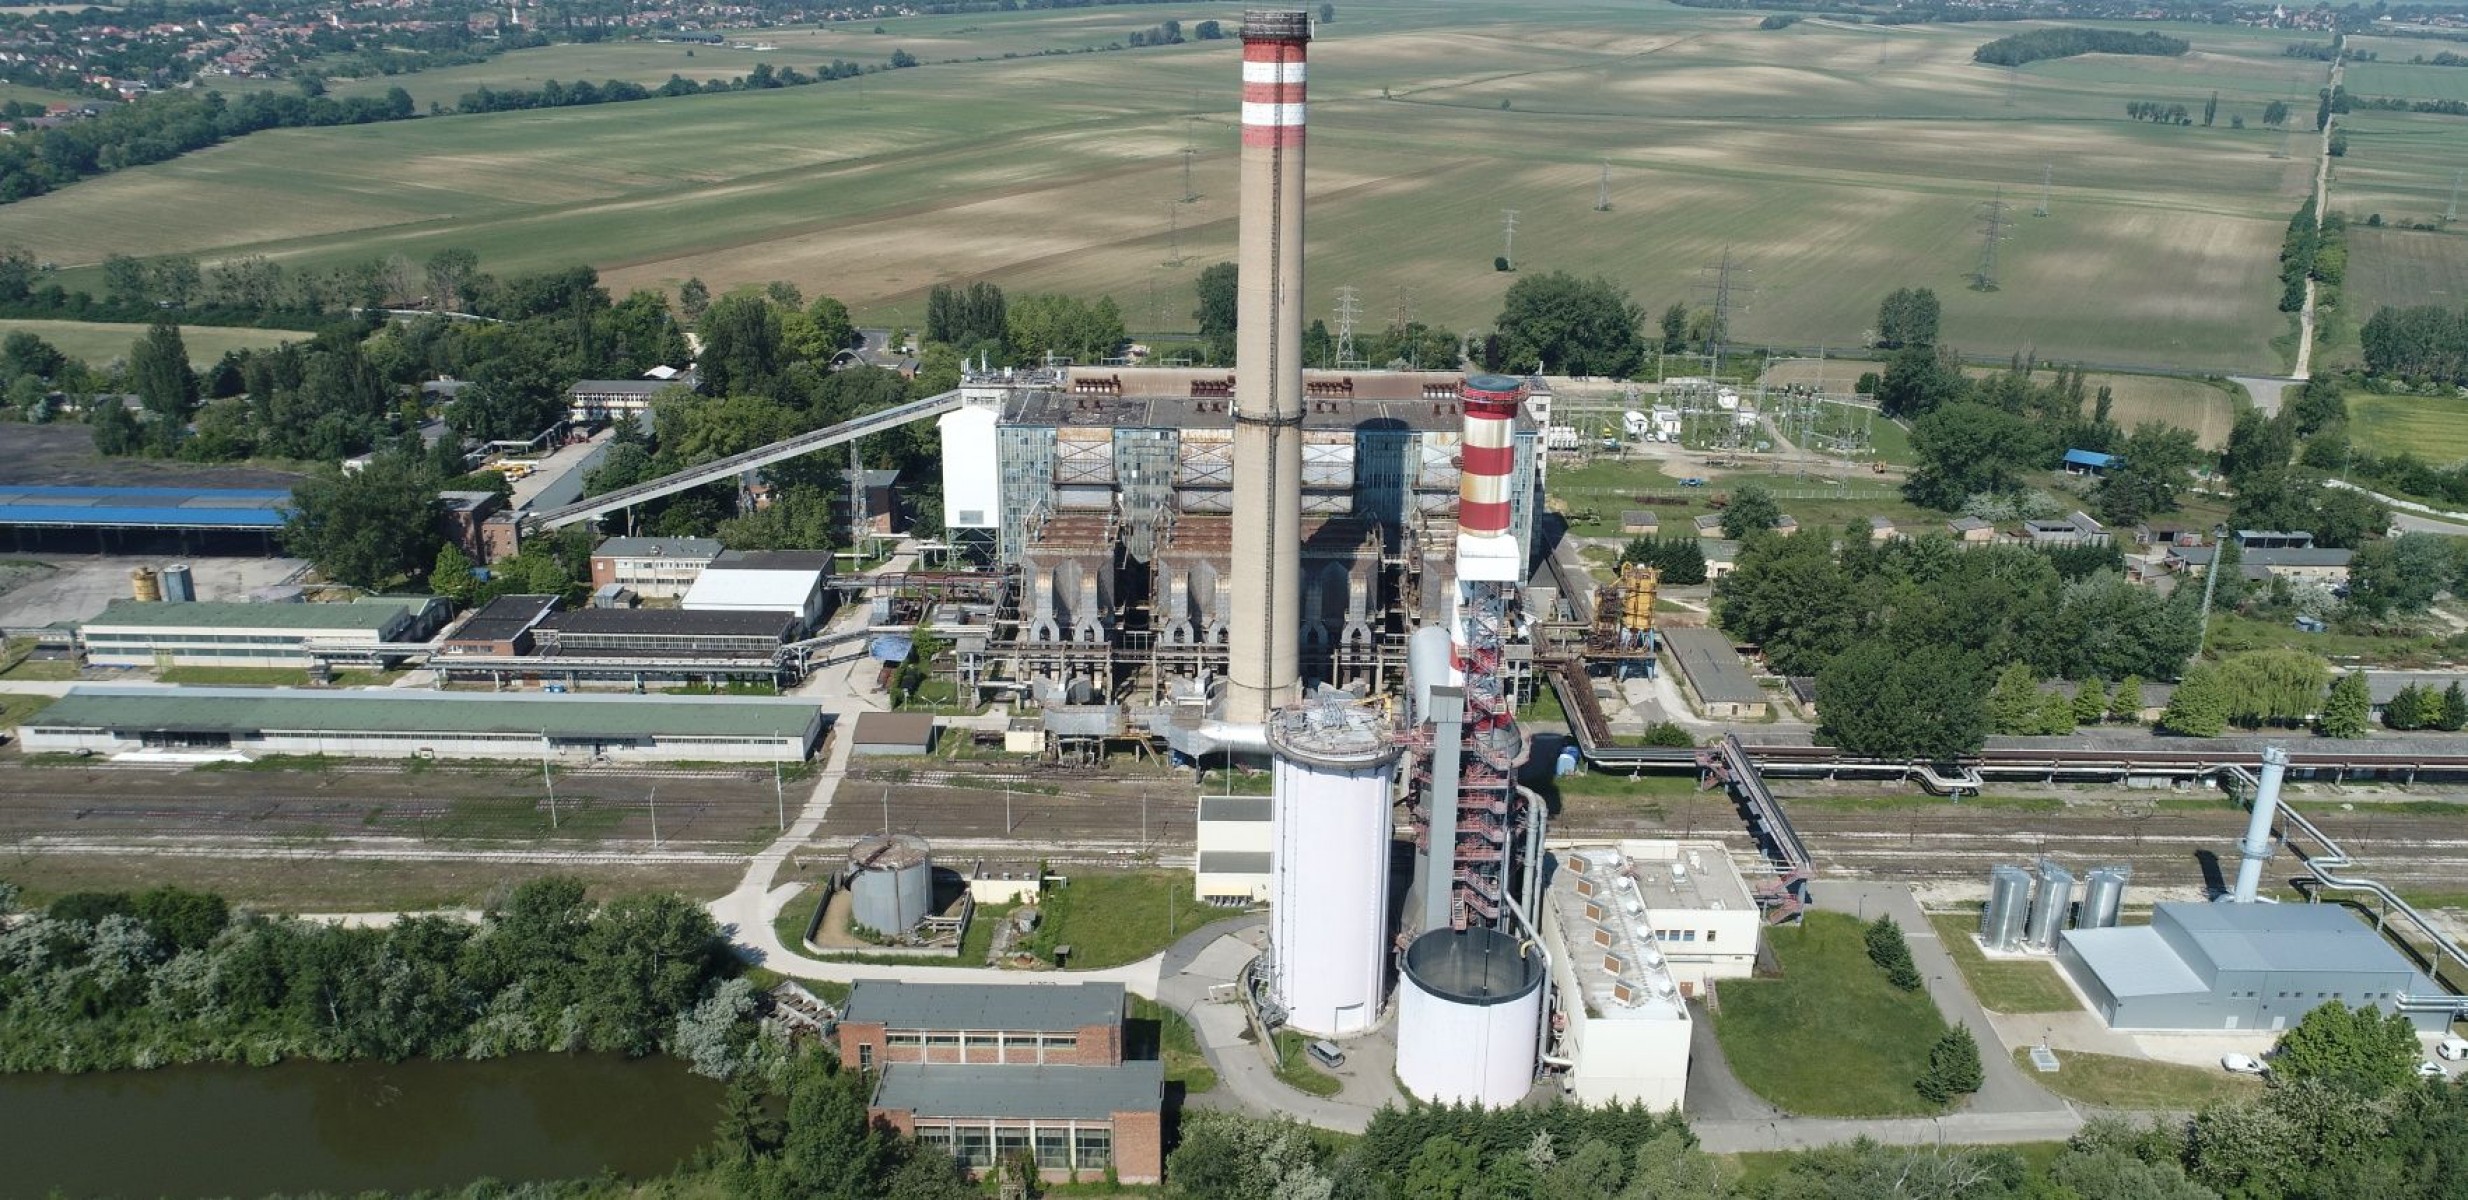 Biomassza alapú energiaelőállításra áll át az Oroszlányi Erőmű